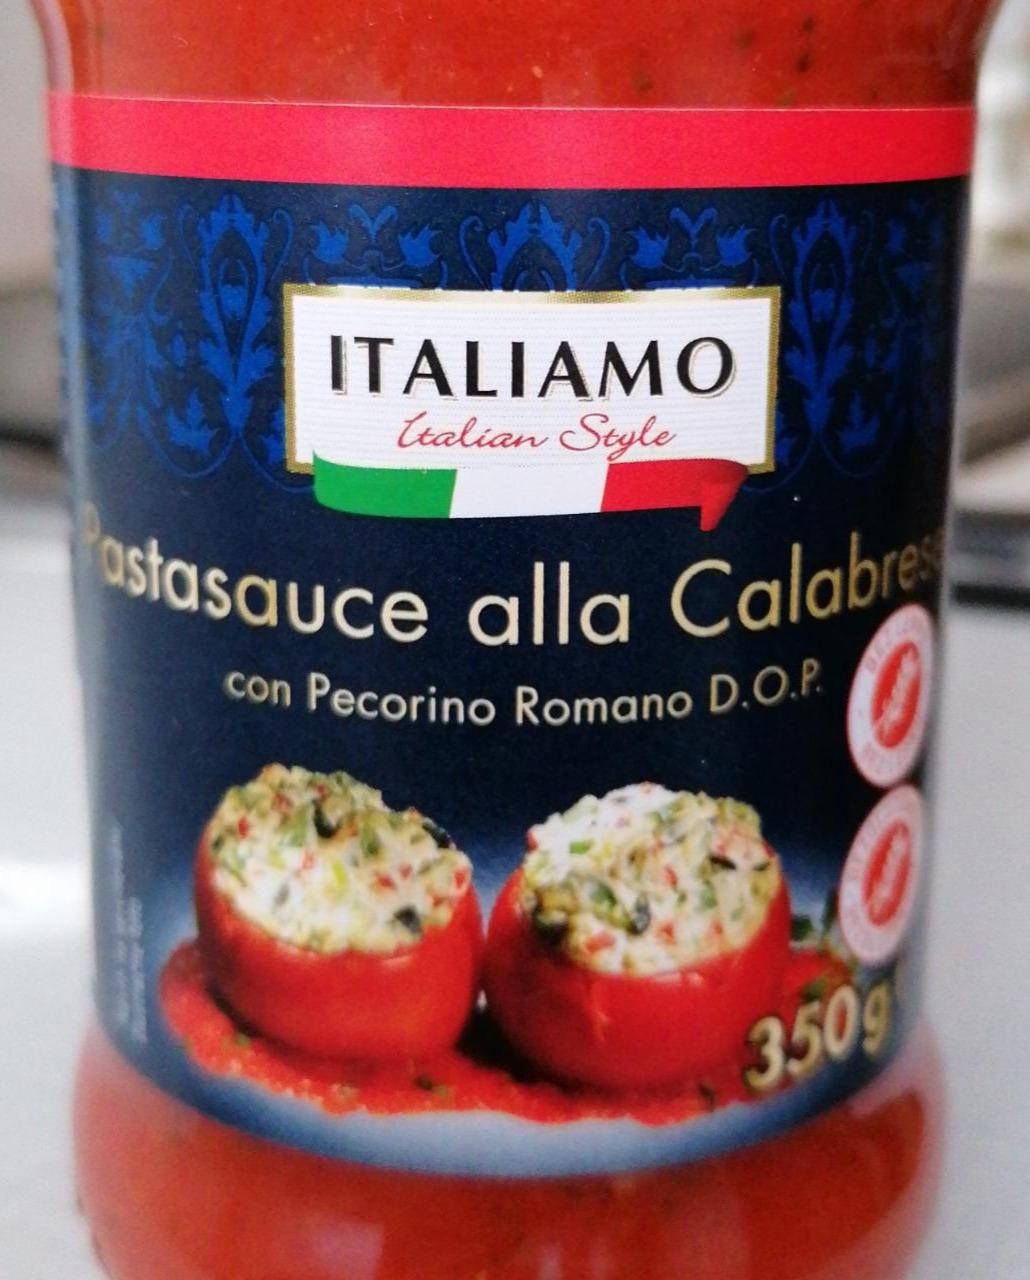 Fotografie - Pasta Sauce alla Calabrese with Pecorino Romano D.O.P. Italiamo